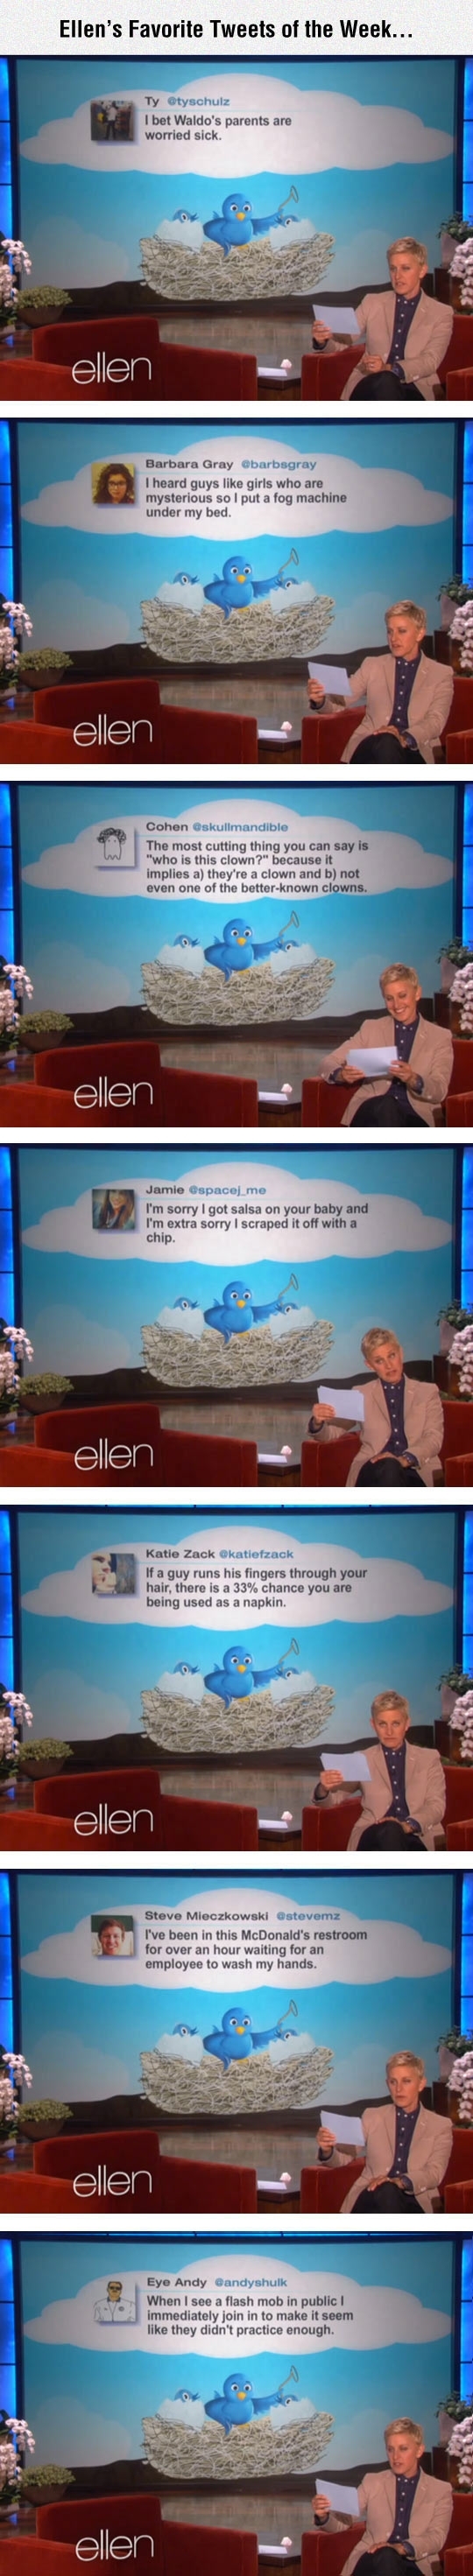 Ellens favorite Tweets